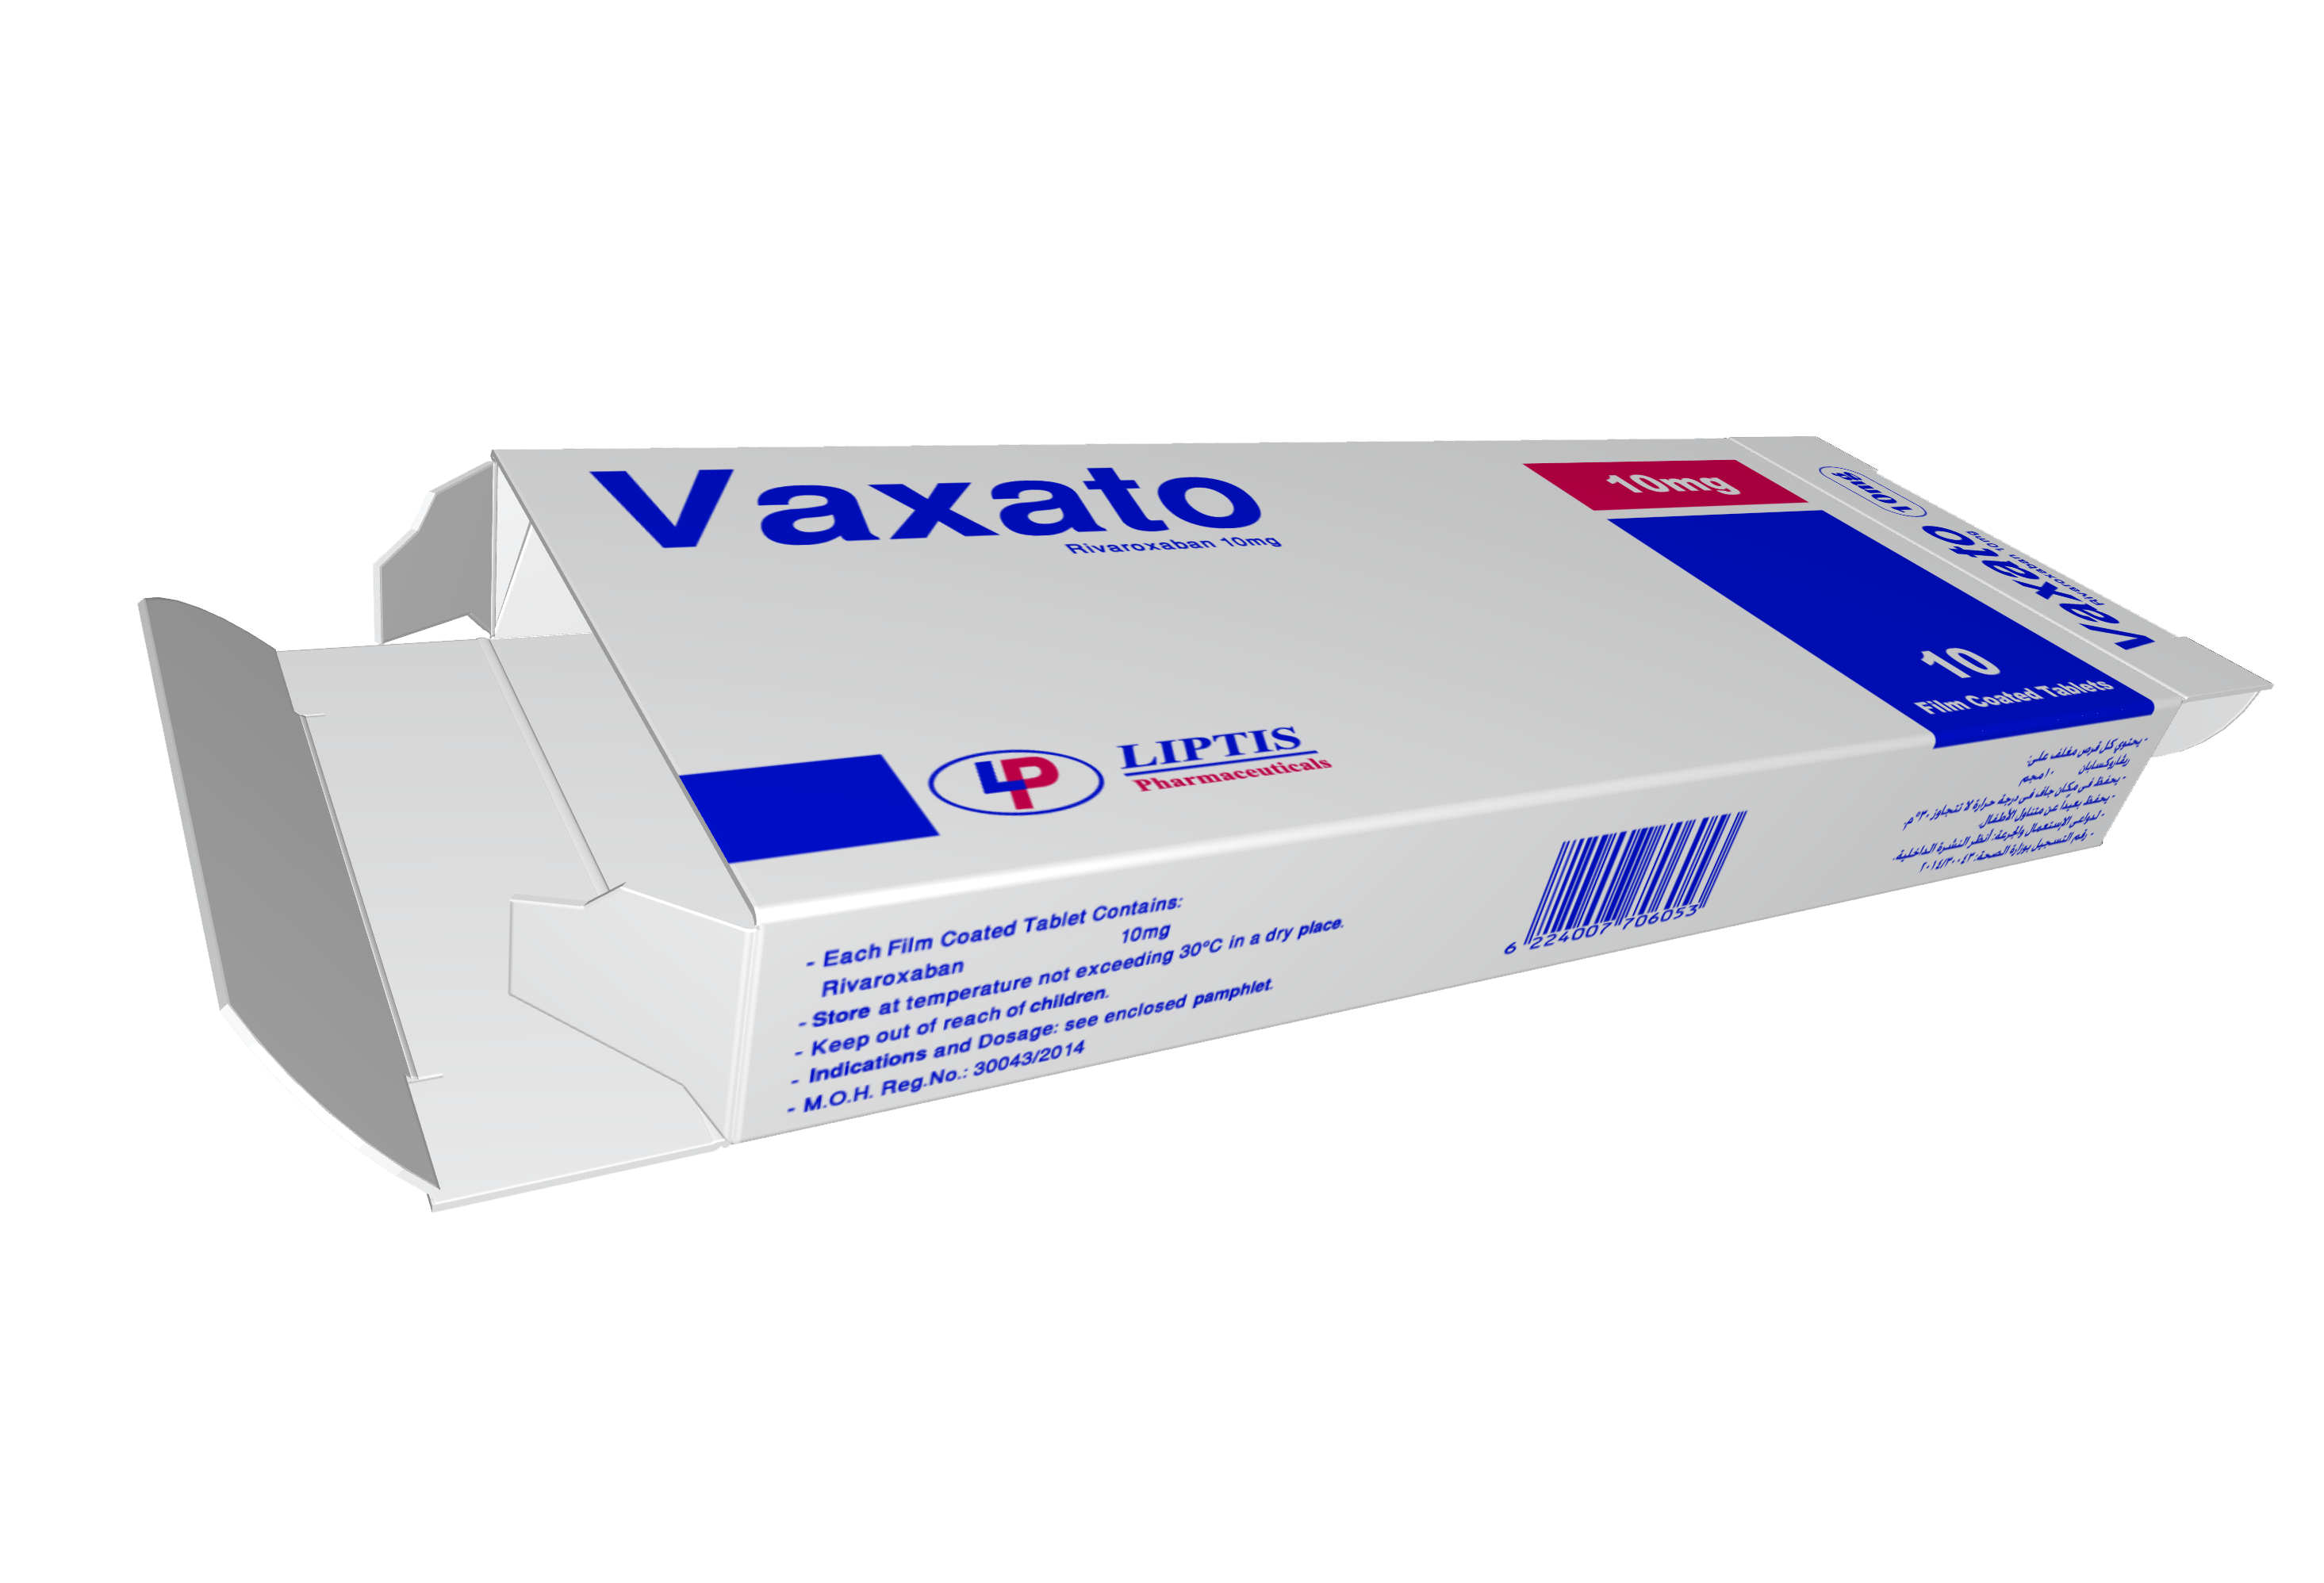 دواء فاكساتو Vaxato لـ علاج حالات تجلط الدم والوقاية من الإصابة بـ الجلطات